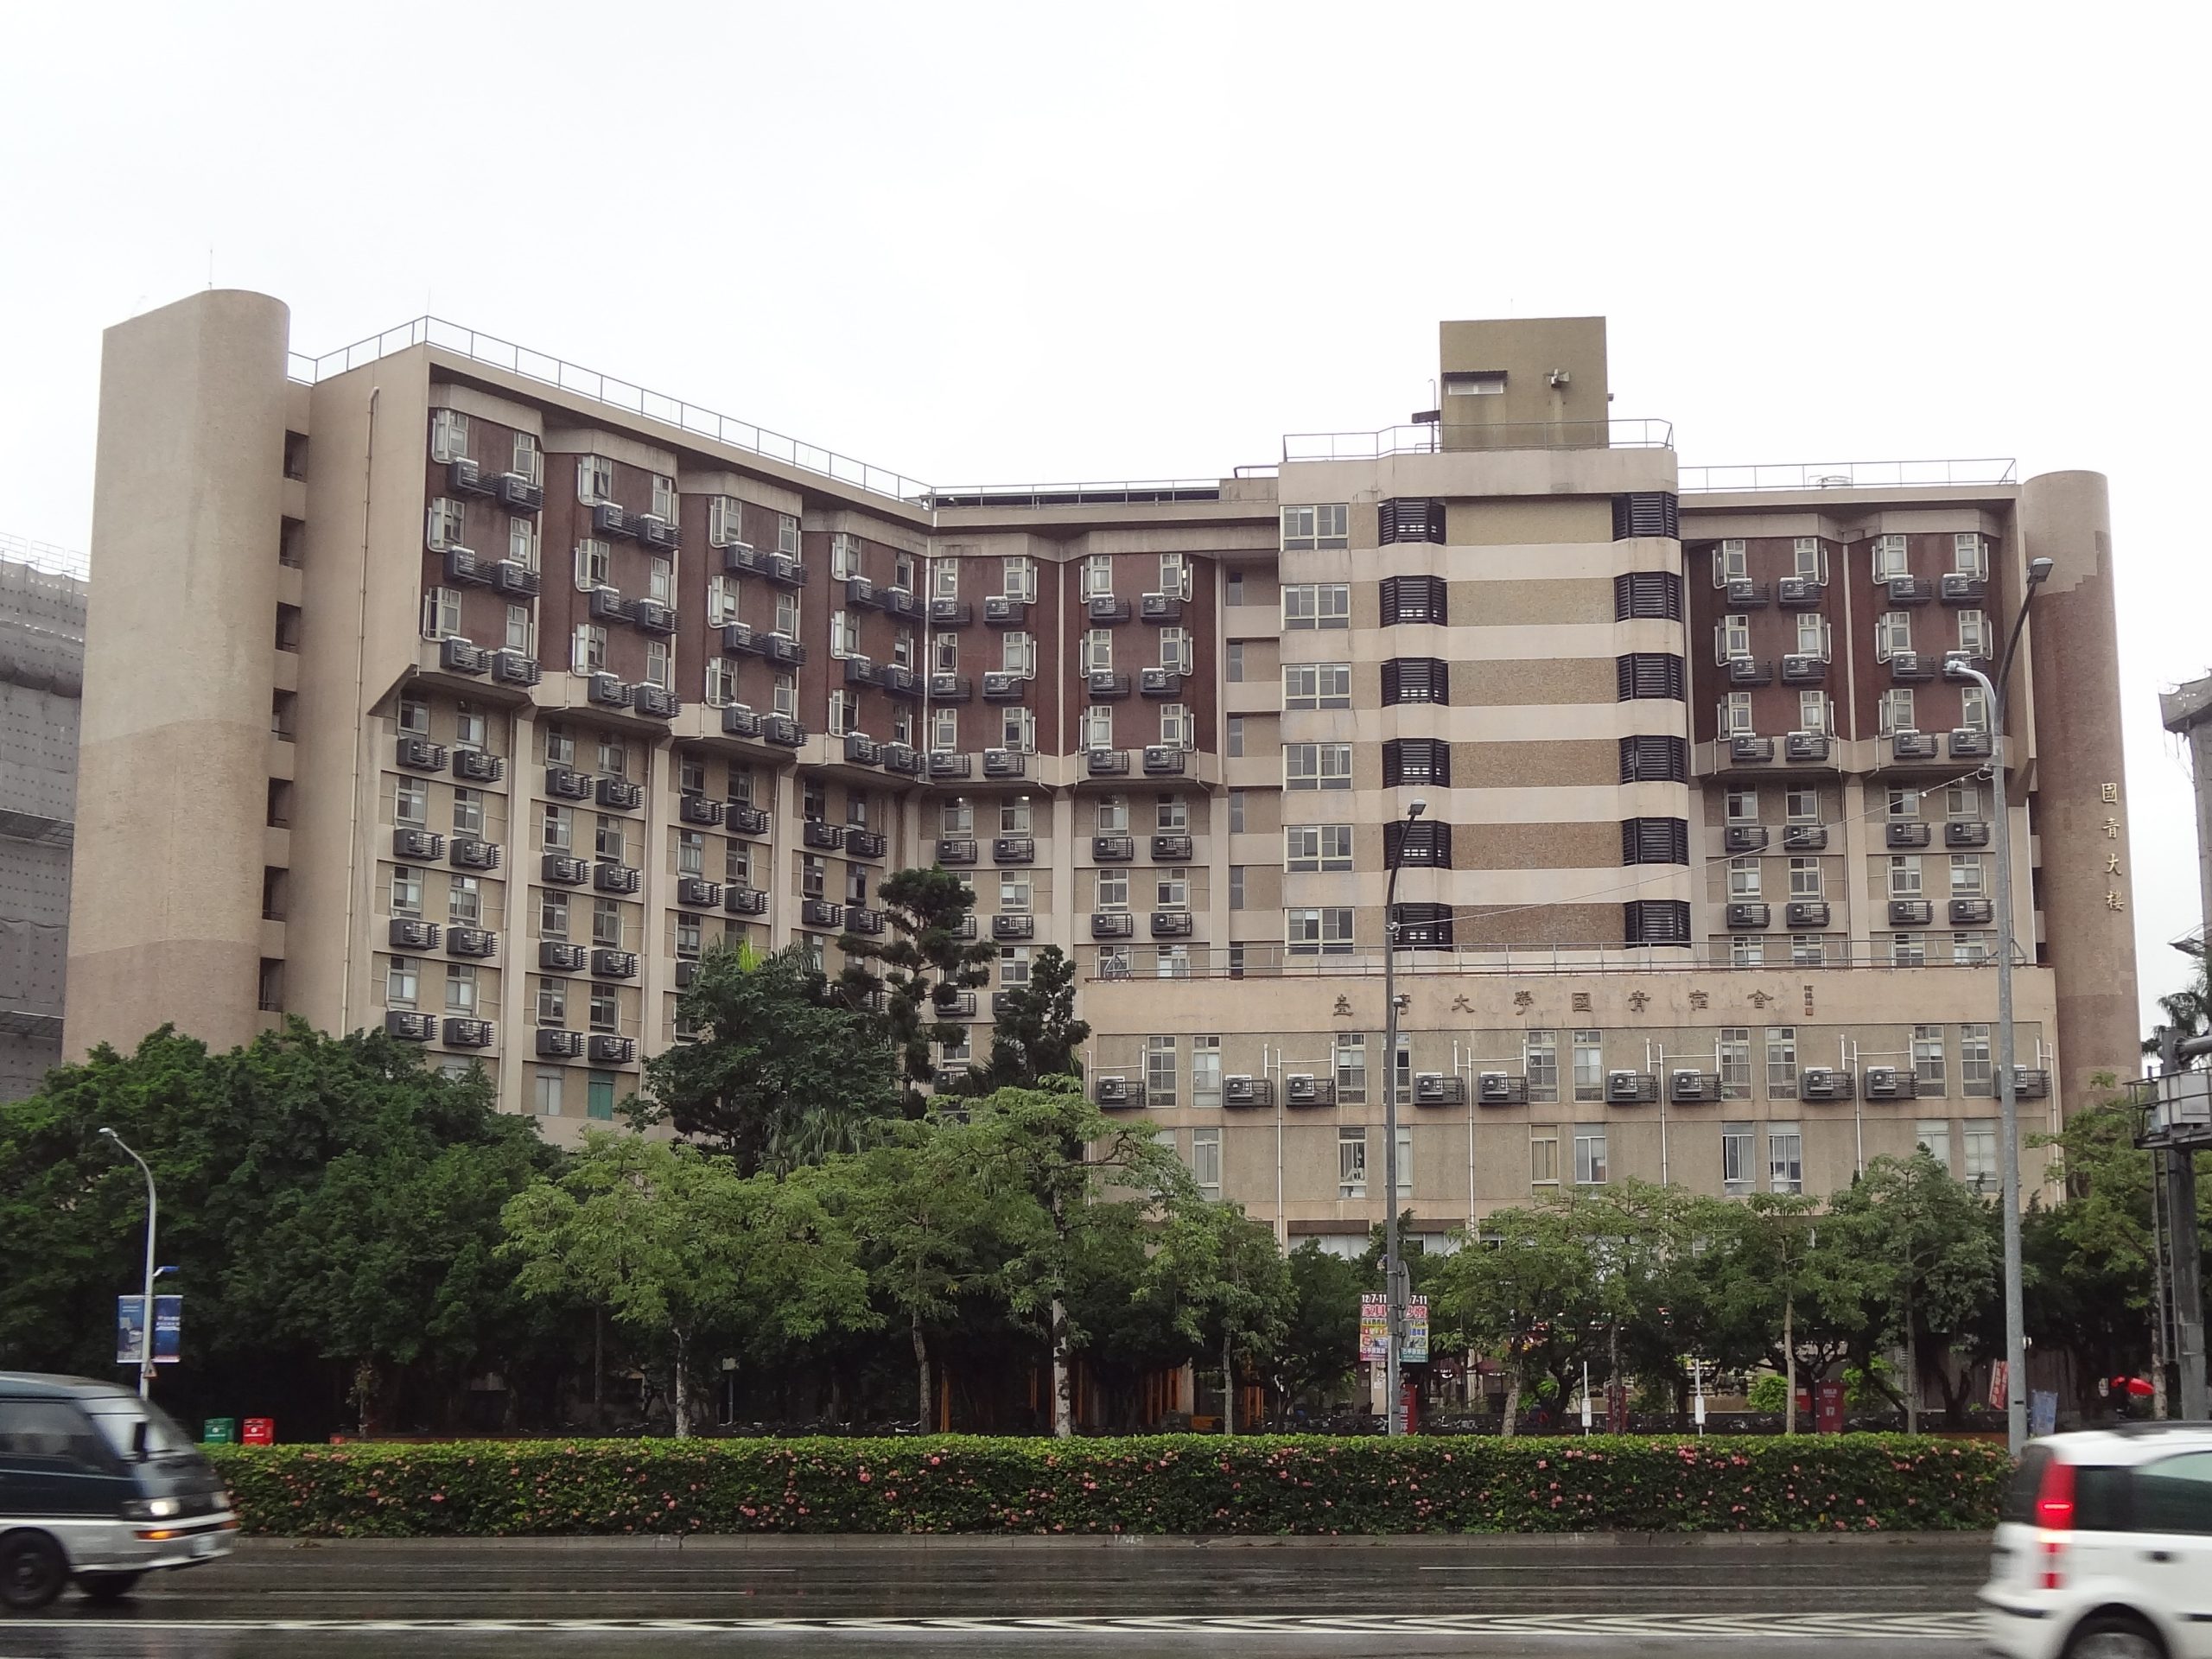 NTU Guoqing Dormitory 20171207 scaled